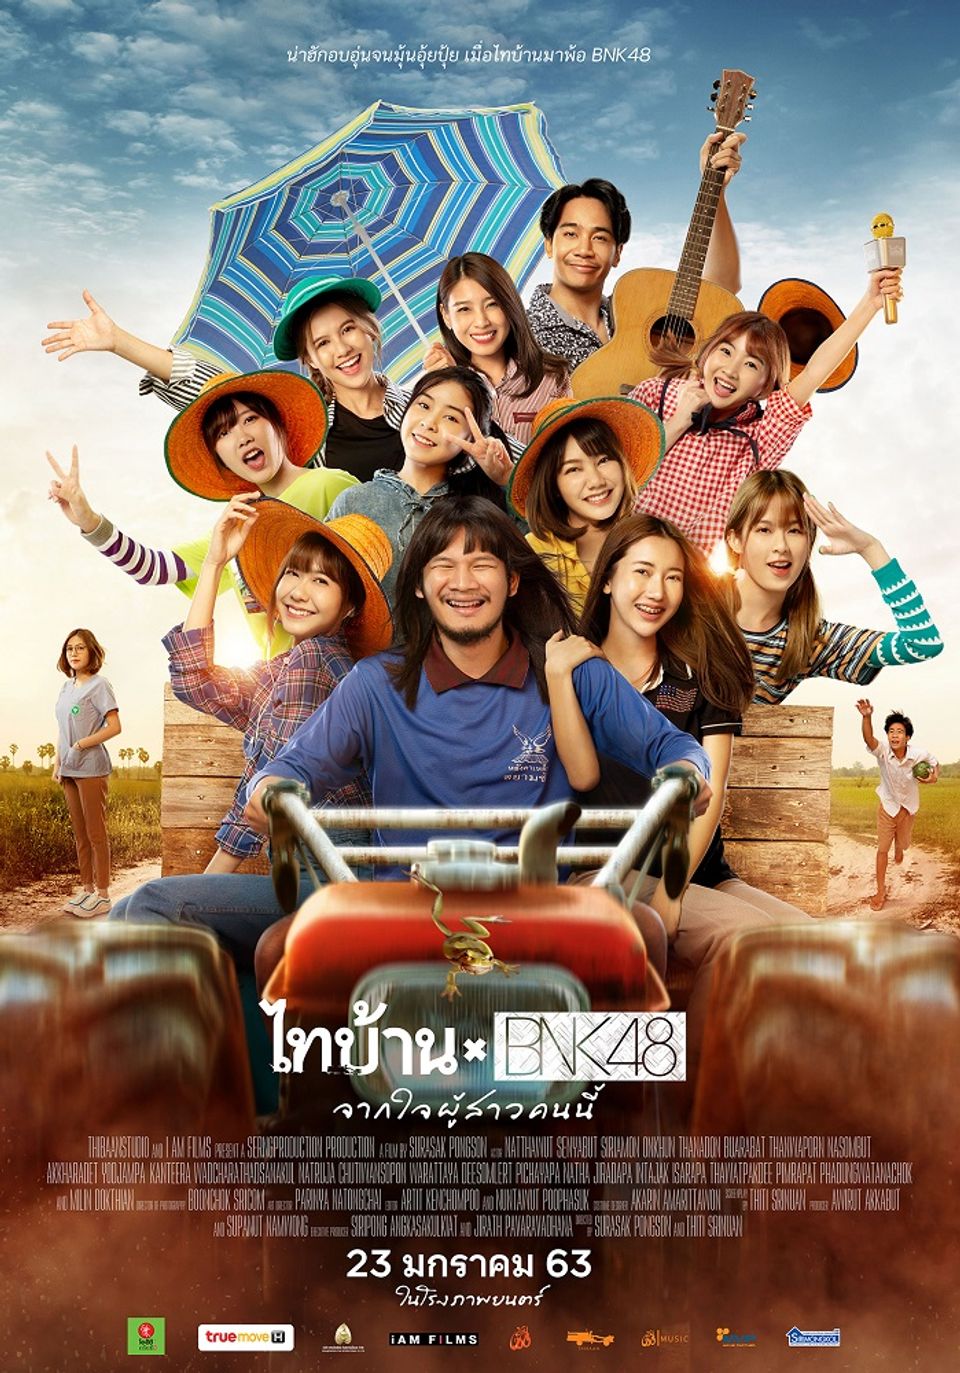 ภาพยนตร์ไทย “ไทบ้าน x BNK48 จากใจผู้สาวคนนี้” (THIBAAN x BNK48)